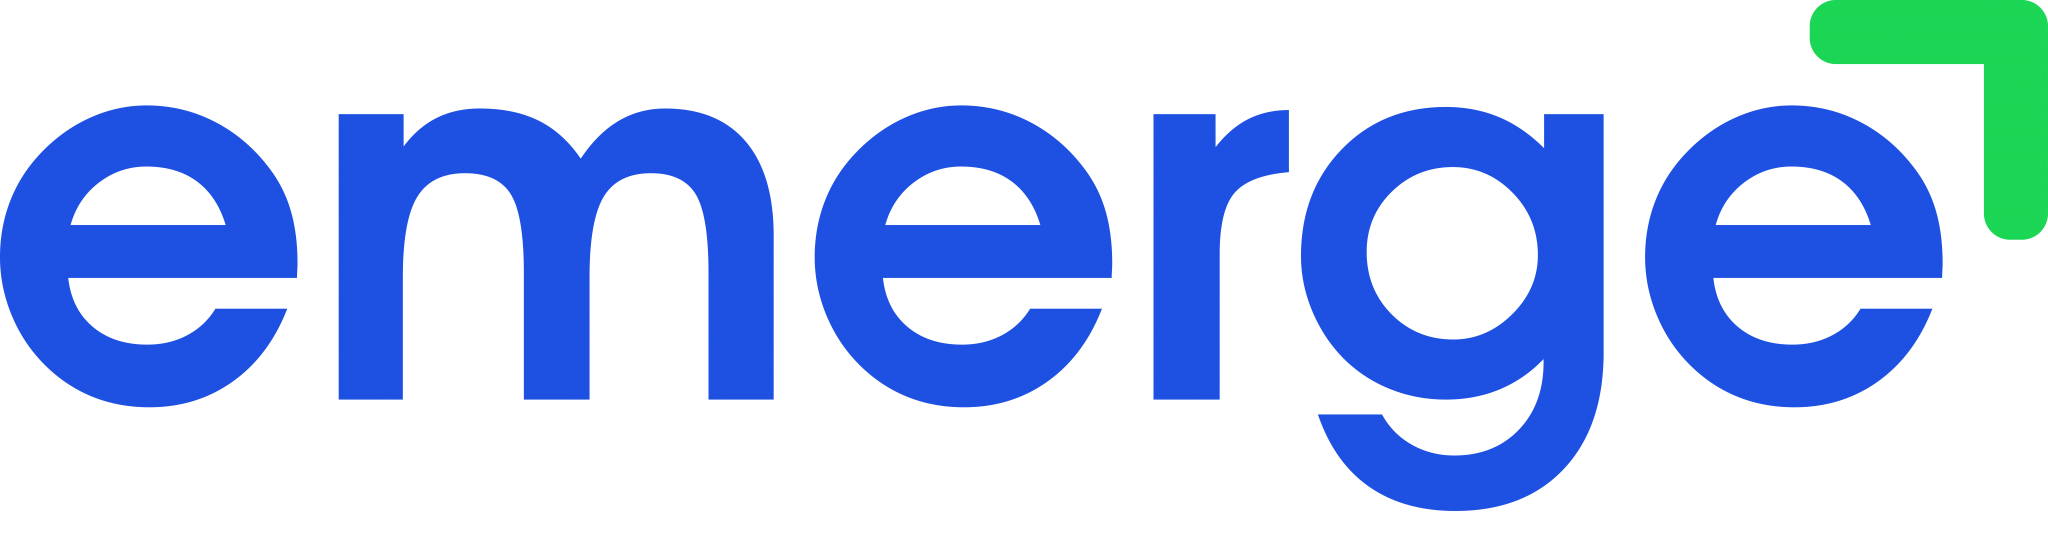 Emerge_Logo_2020_HD-2-2048x511-1.png